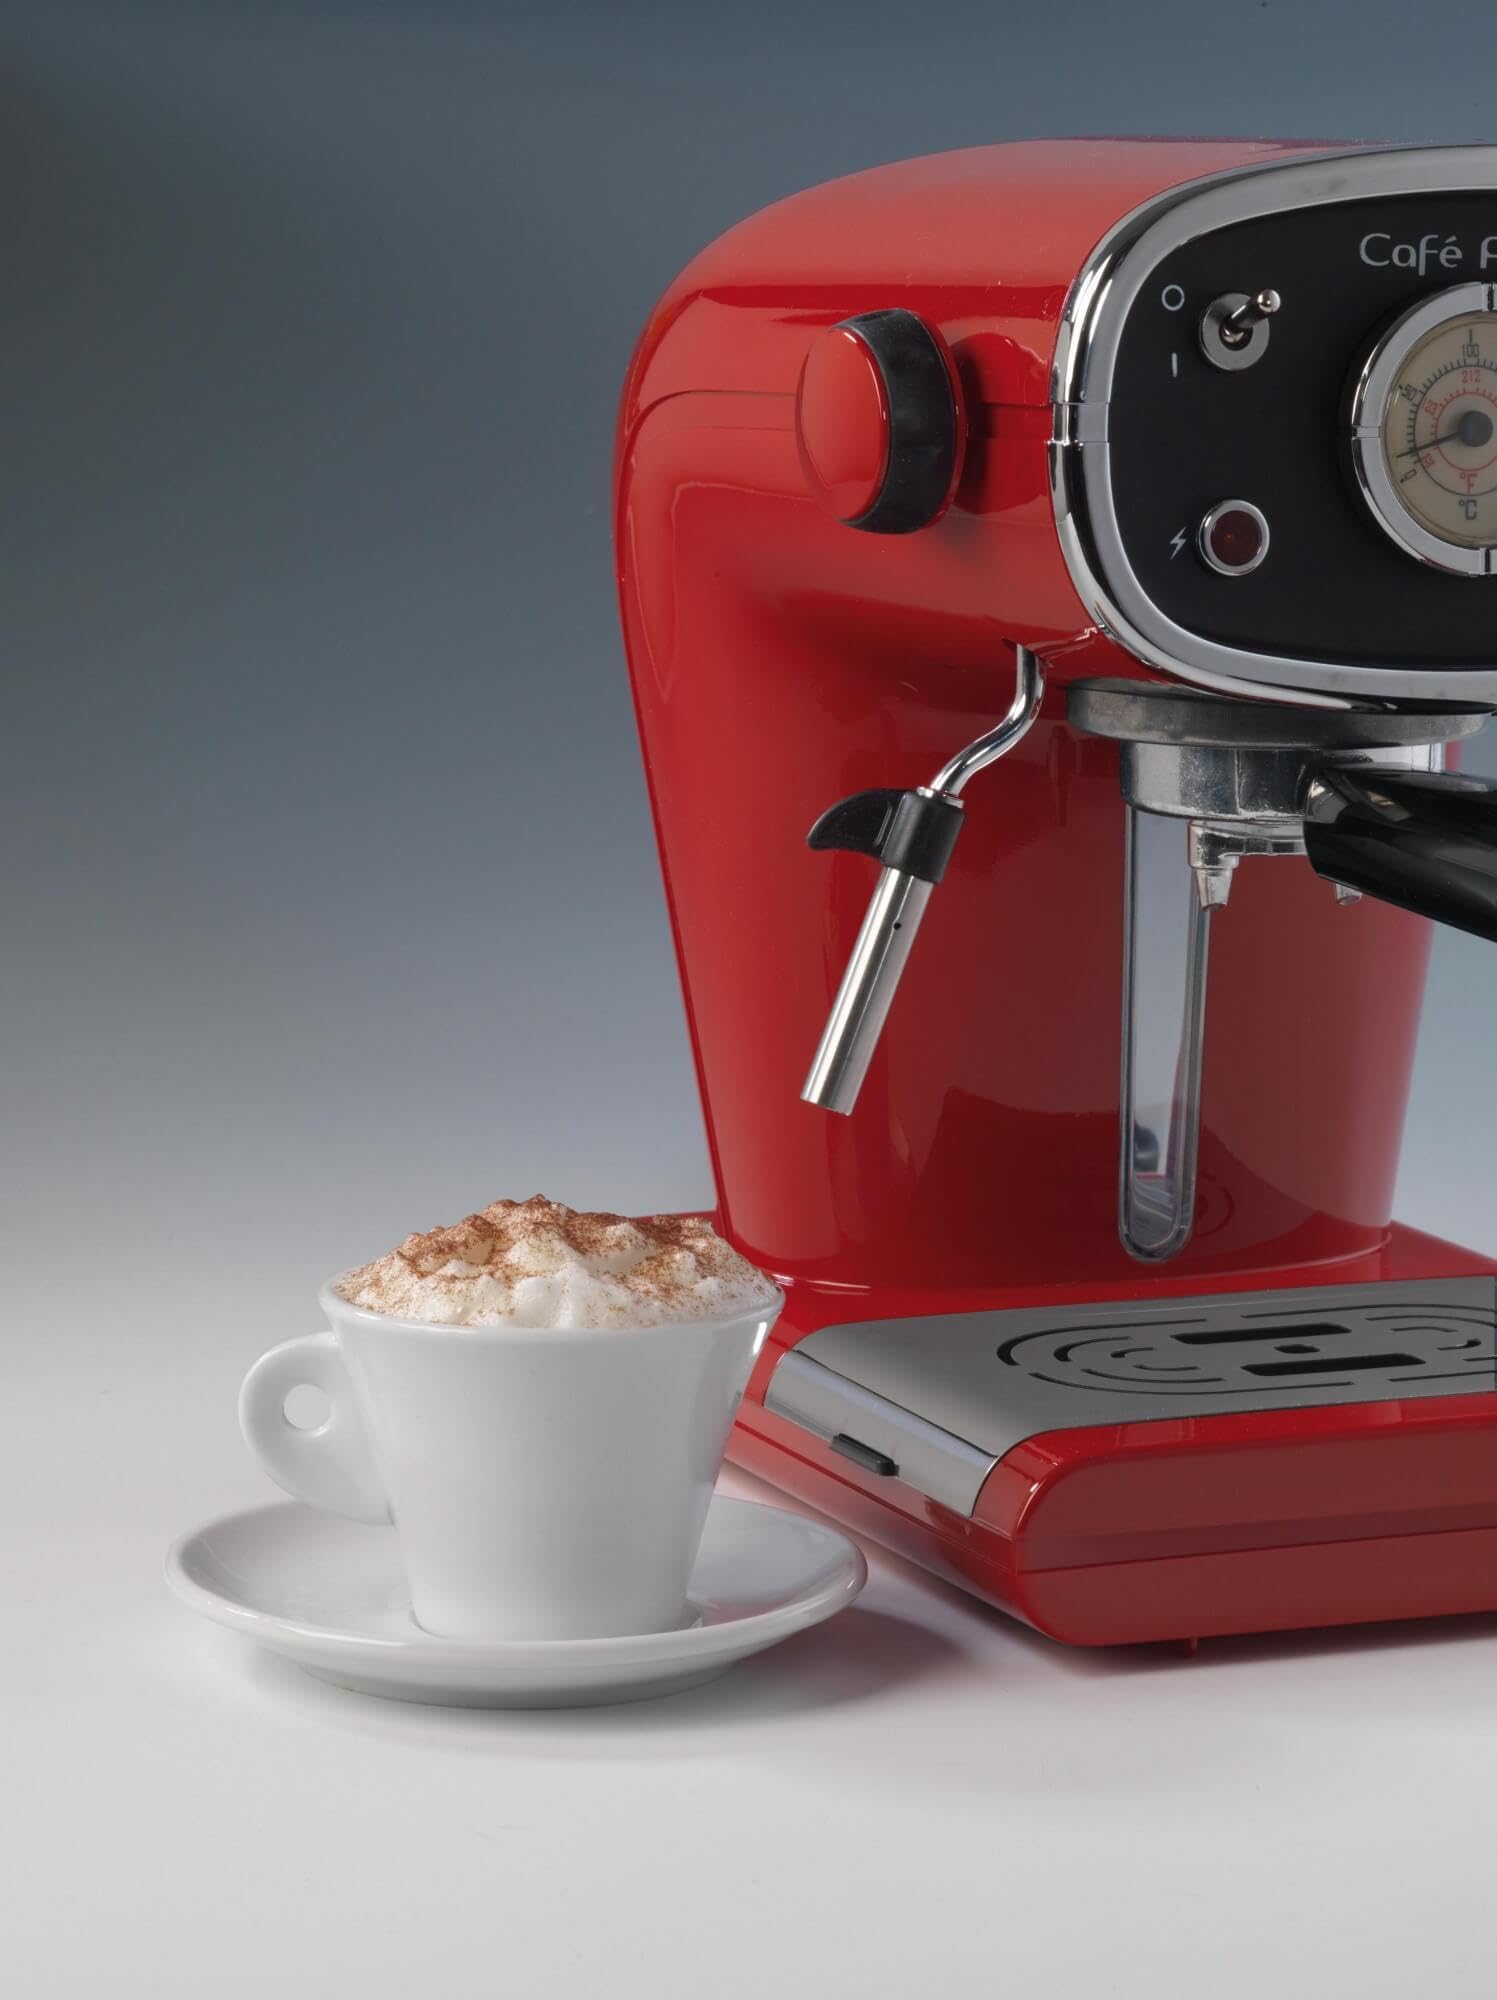 Ariete Vintage Pump Expresso Coffee Machine with Steamer, Maxi Cappuccino Maker, Ground Coffee اريتي ماكينة تحضير القهوة بامب اكسبريسو بلون احمر